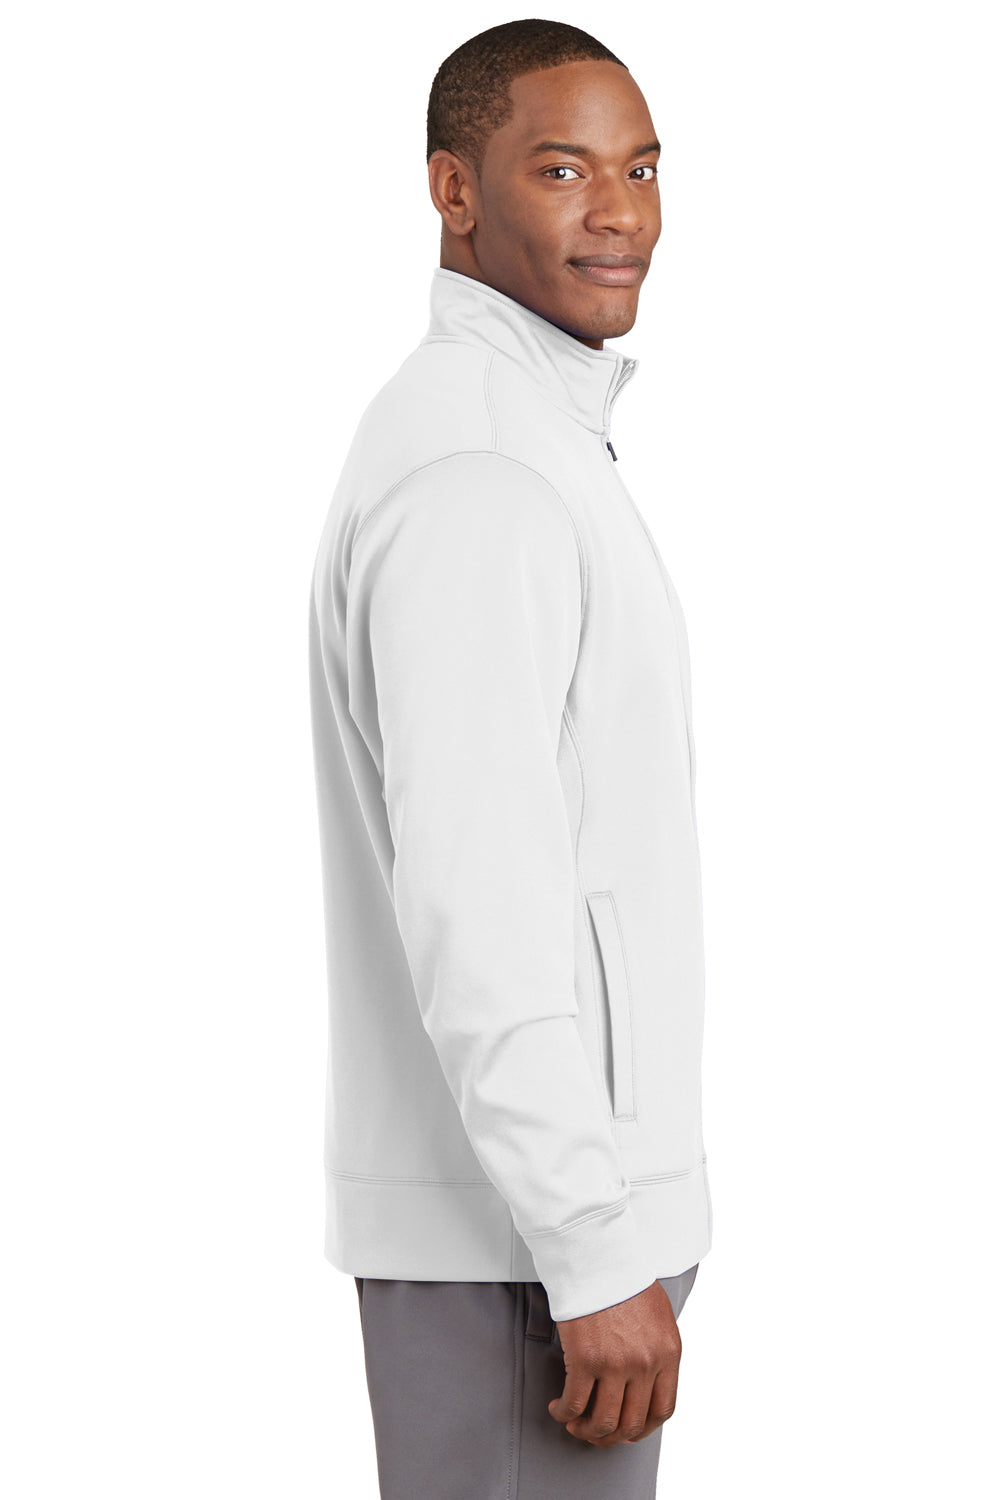 Sport-Tek ST241 Mens Sport-Wick Moisture Wicking Fleece Full Zip Sweatshirt White Side